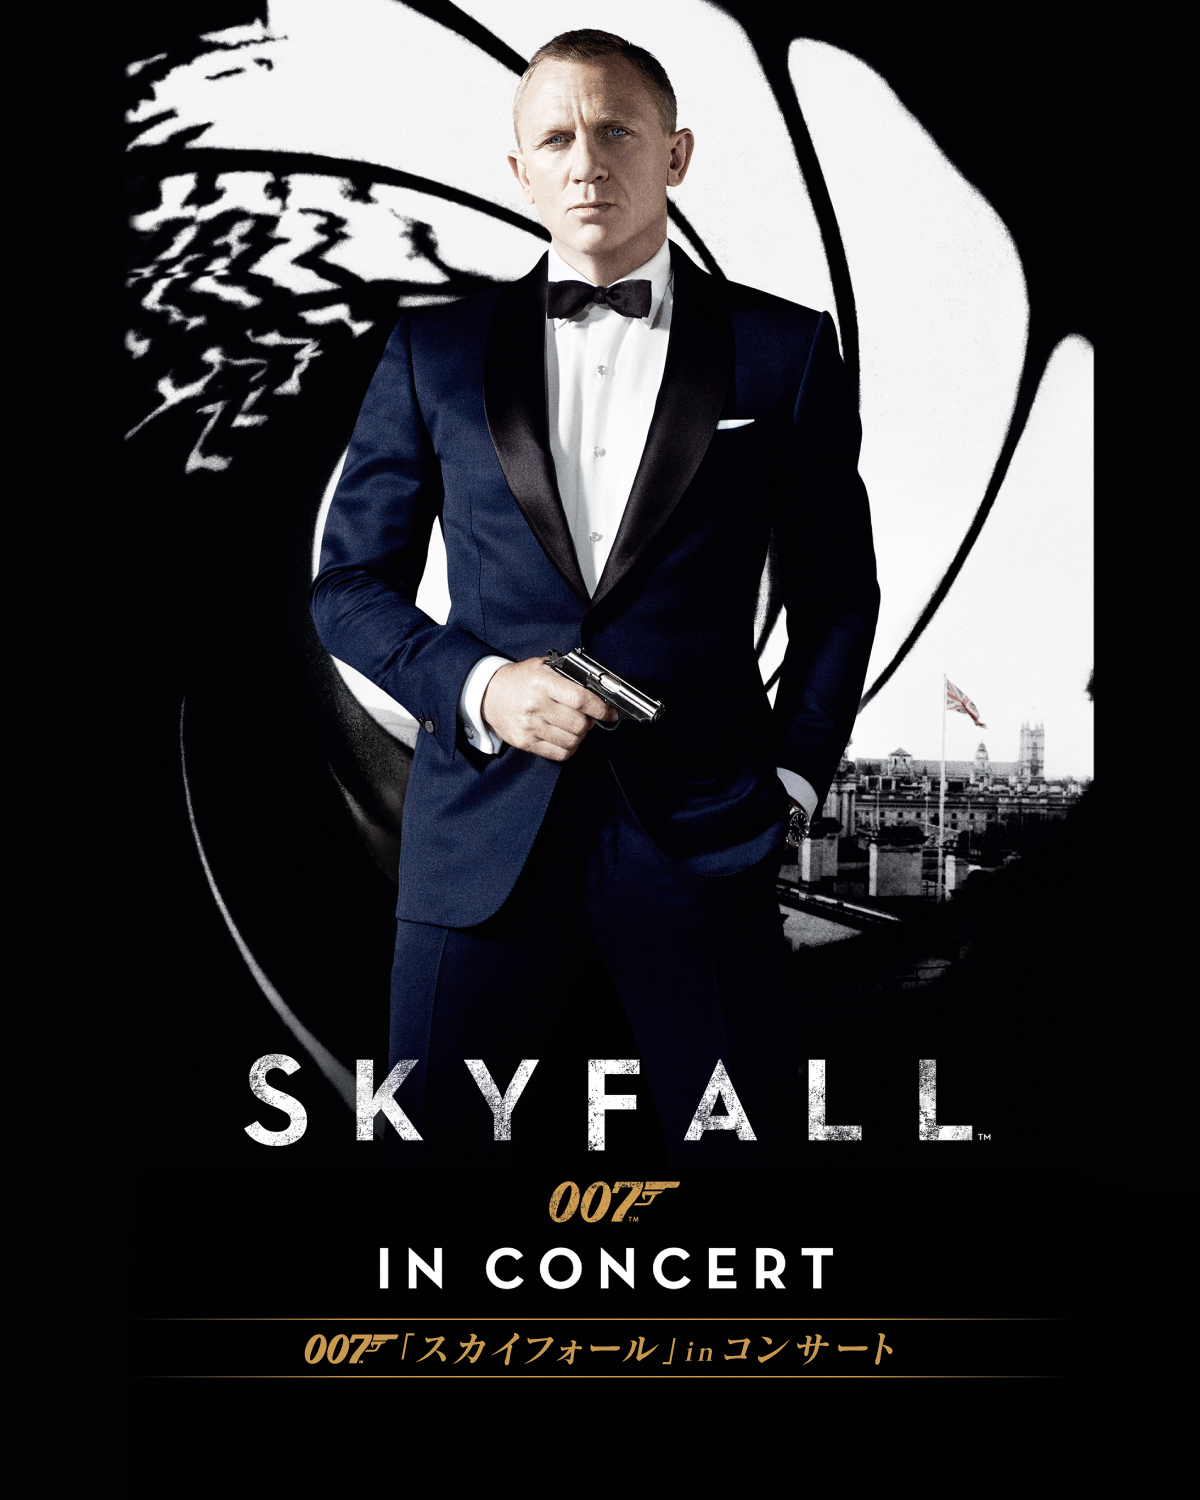 『007「スカイフォール」in コンサート』2021年3月27日(土) 東京国際フォーラム ホールA開催決定！本日よりチケット発売開始！